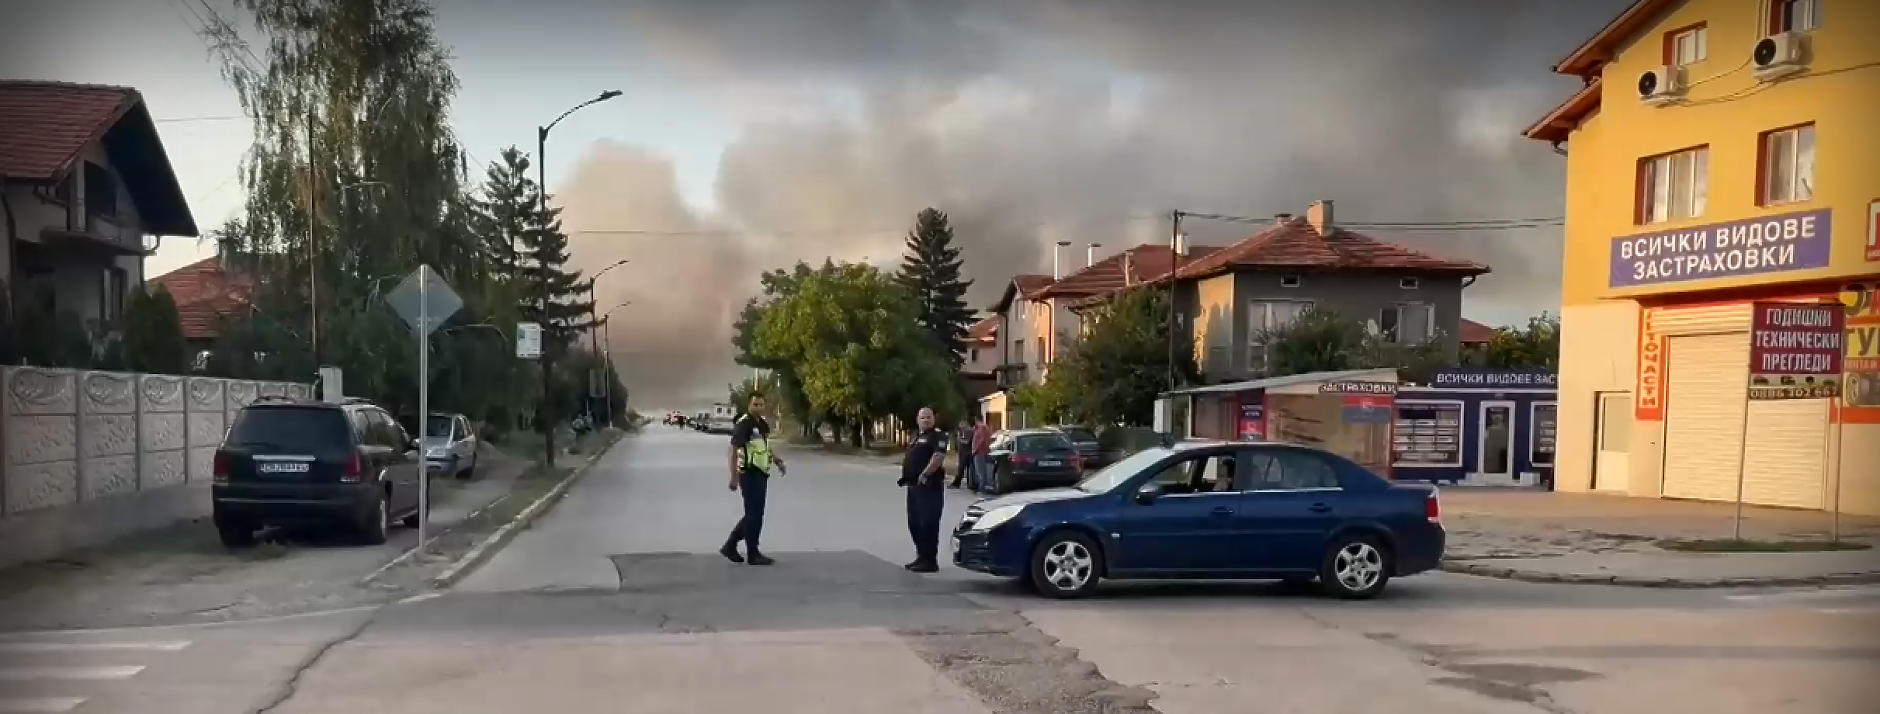 Три склада с фойерверки се взривиха край Елин Пелин. Ситуацията е много тежка, обобщи вътрешният министър (допълнена и обновена)